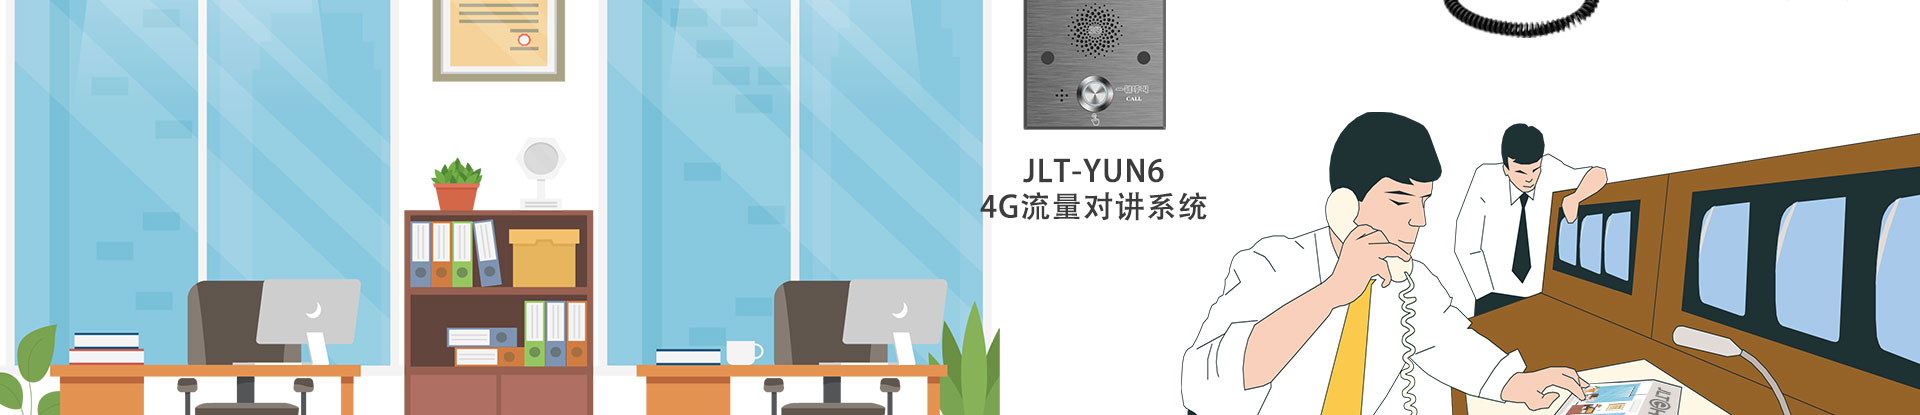 JLT-YUN6-4G流量对讲系统详情页_13.jpg